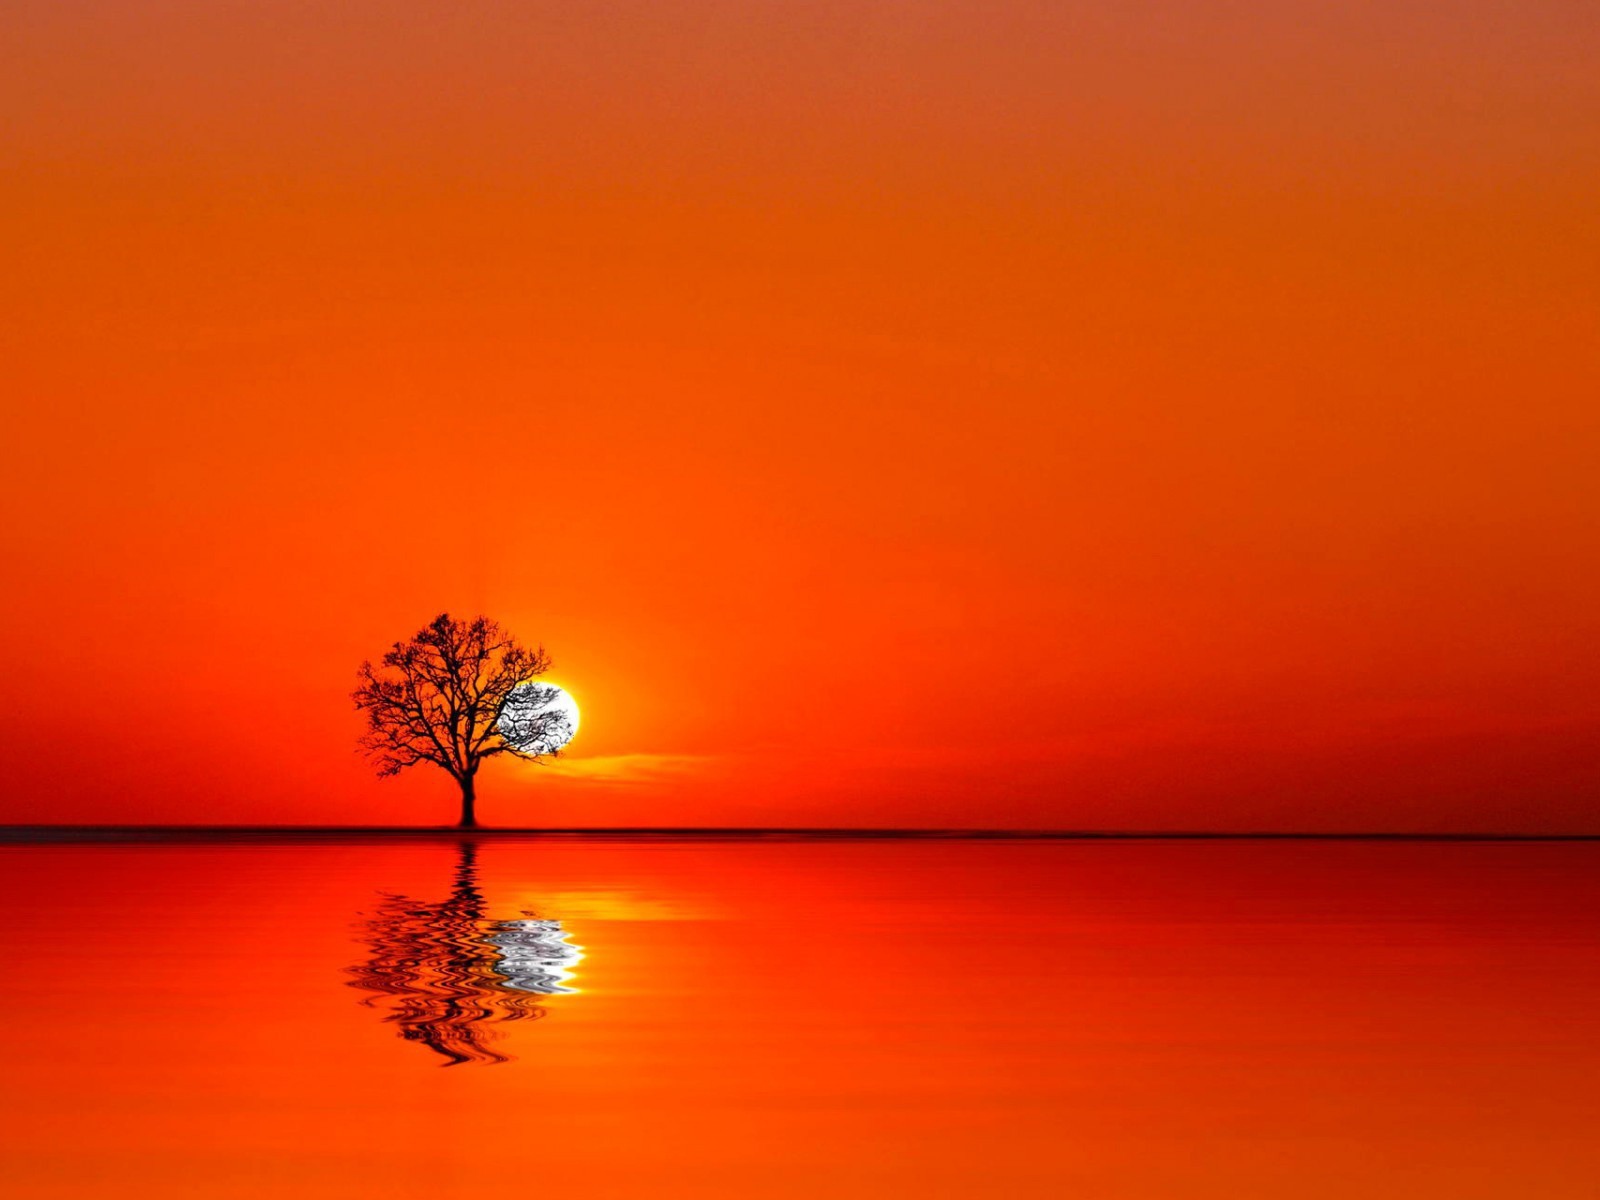 Дерево на закате между водой и небом